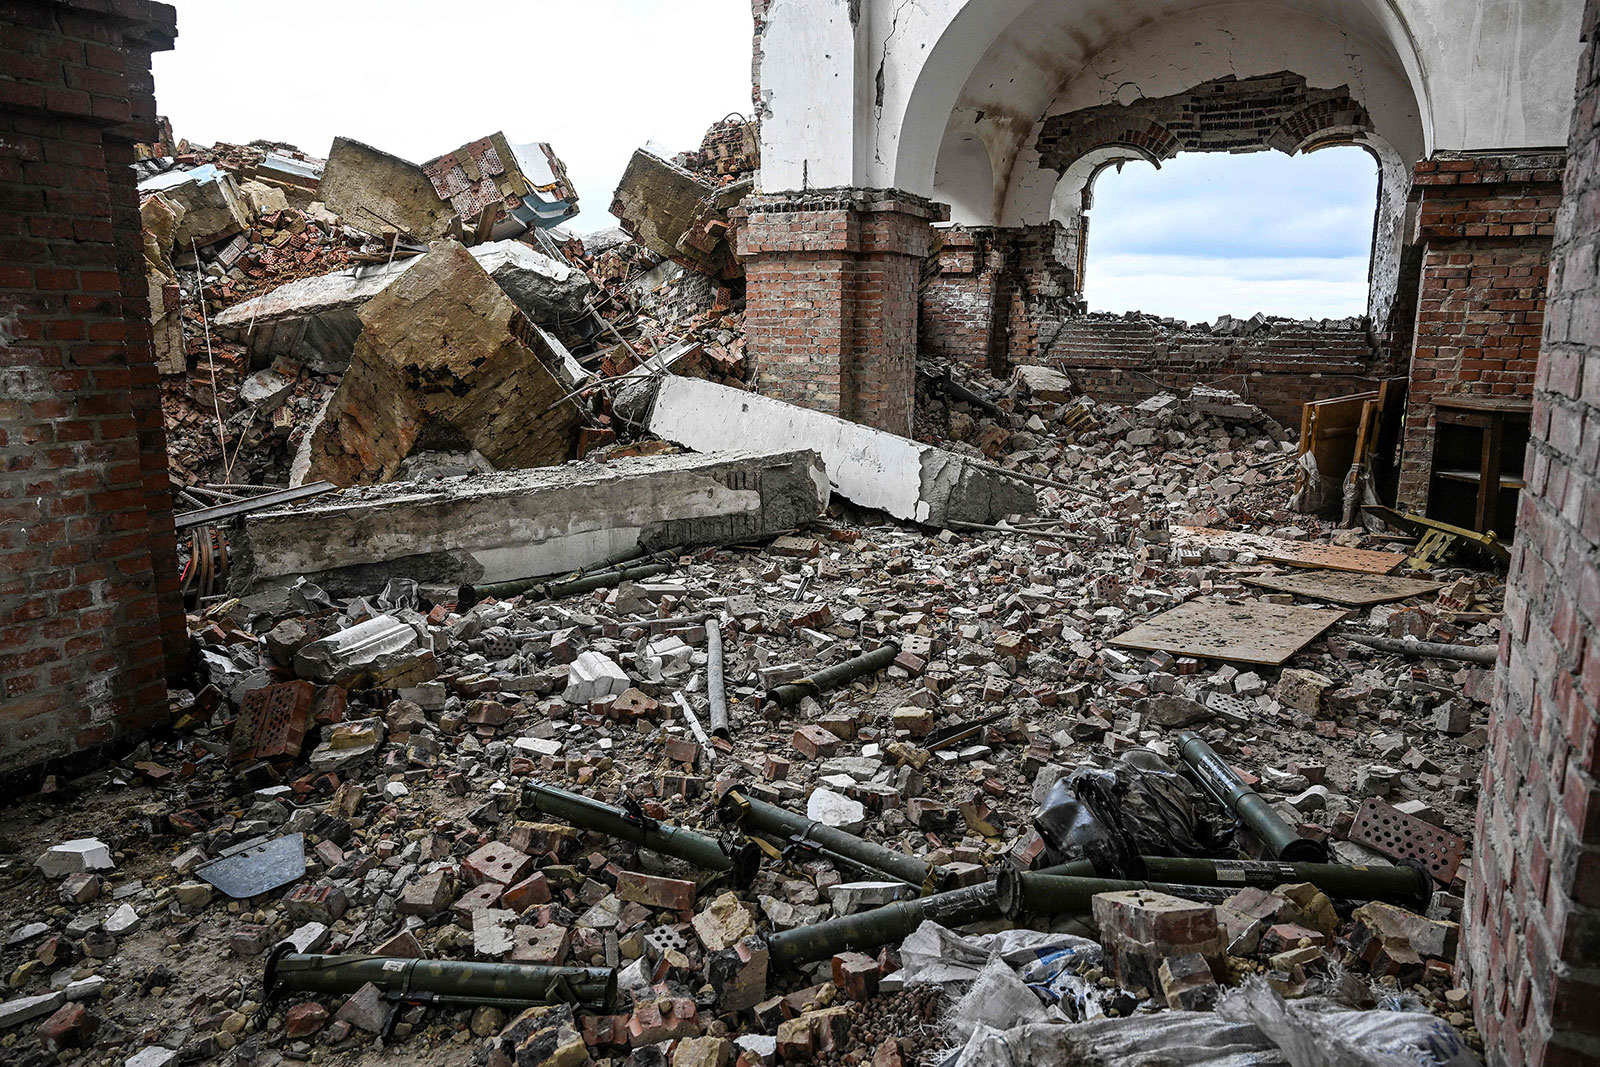 9 月 13 日、ドネツク地方のクラマトルスクにあるボホロディチネ村の教会内で、放棄された弾薬が見られる。